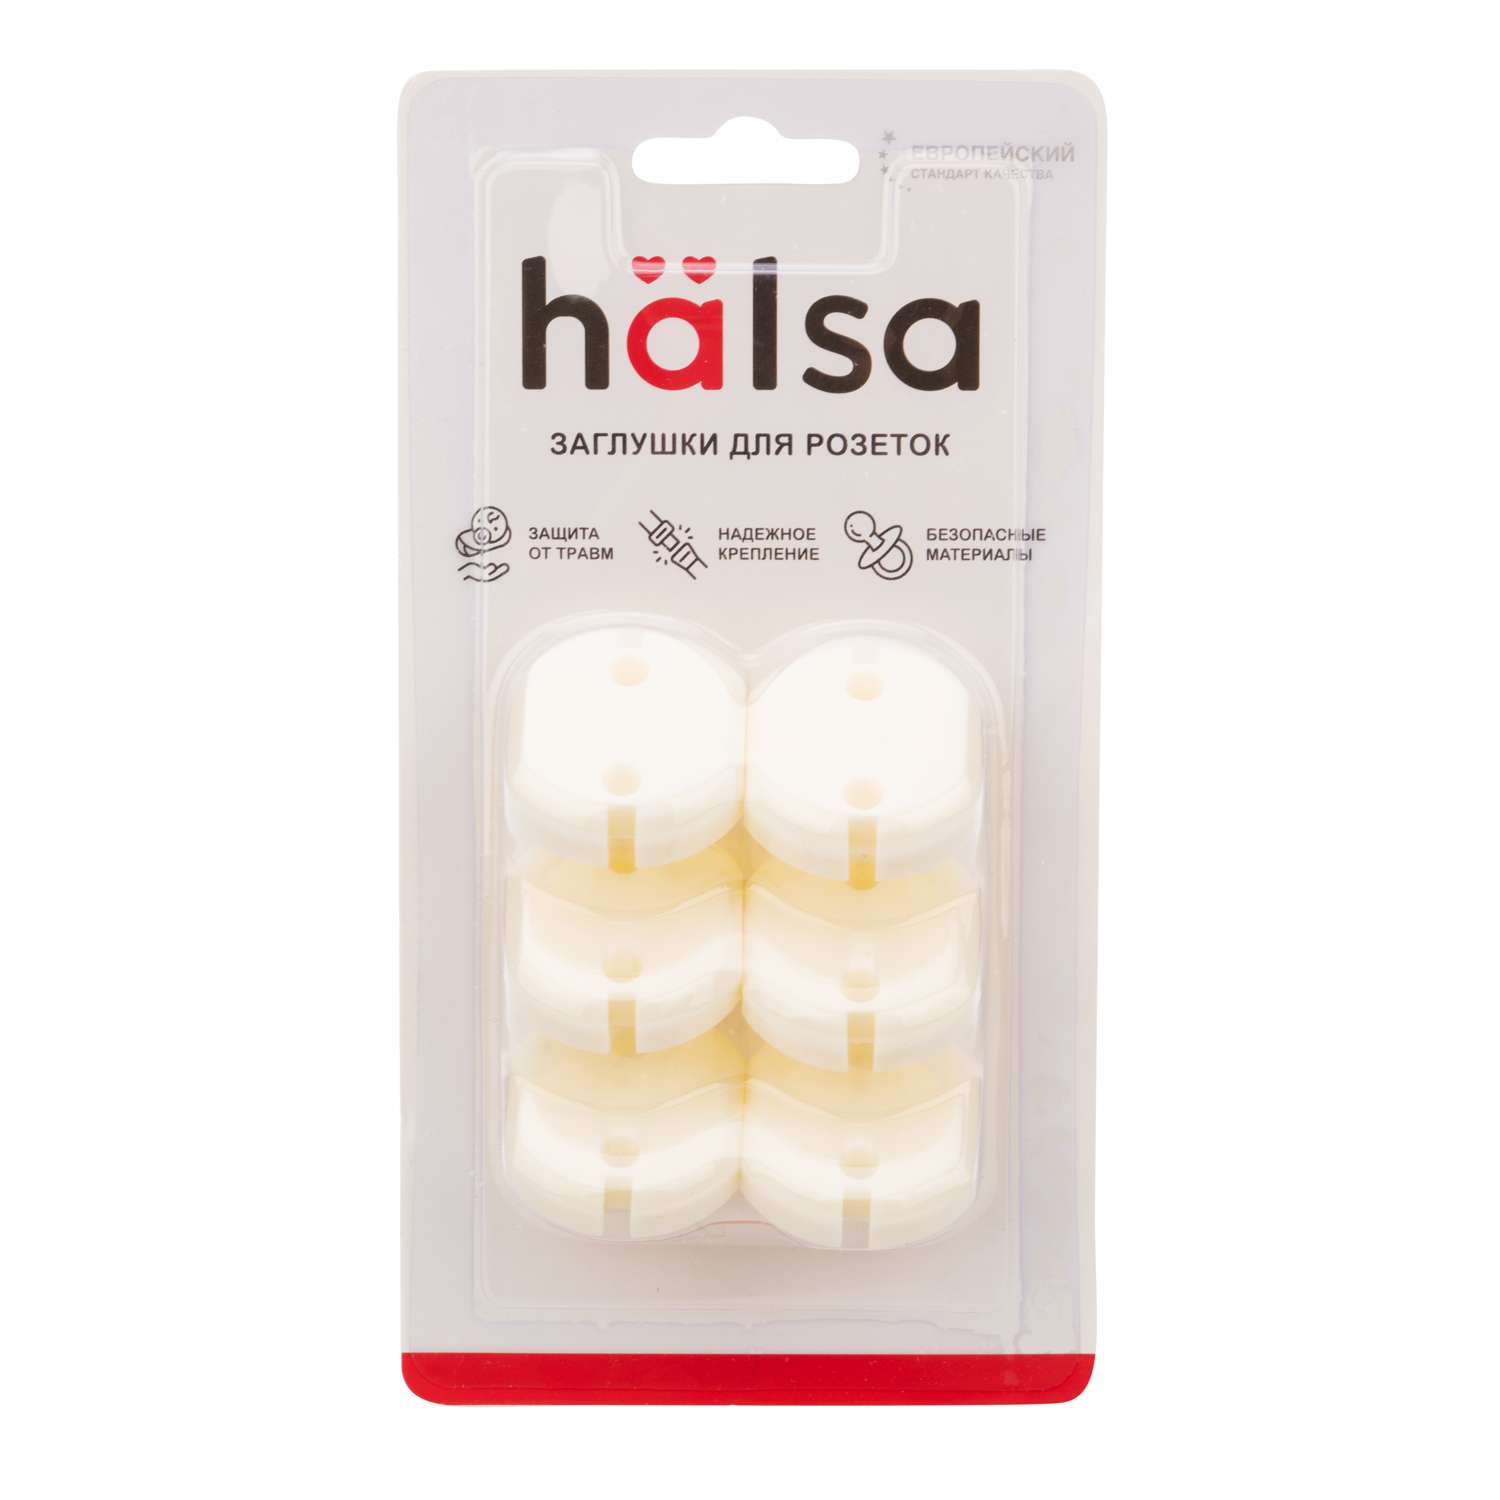 Заглушки HALSA из полиуретана для ограничения доступа к розеткам 6 шт - фото 7